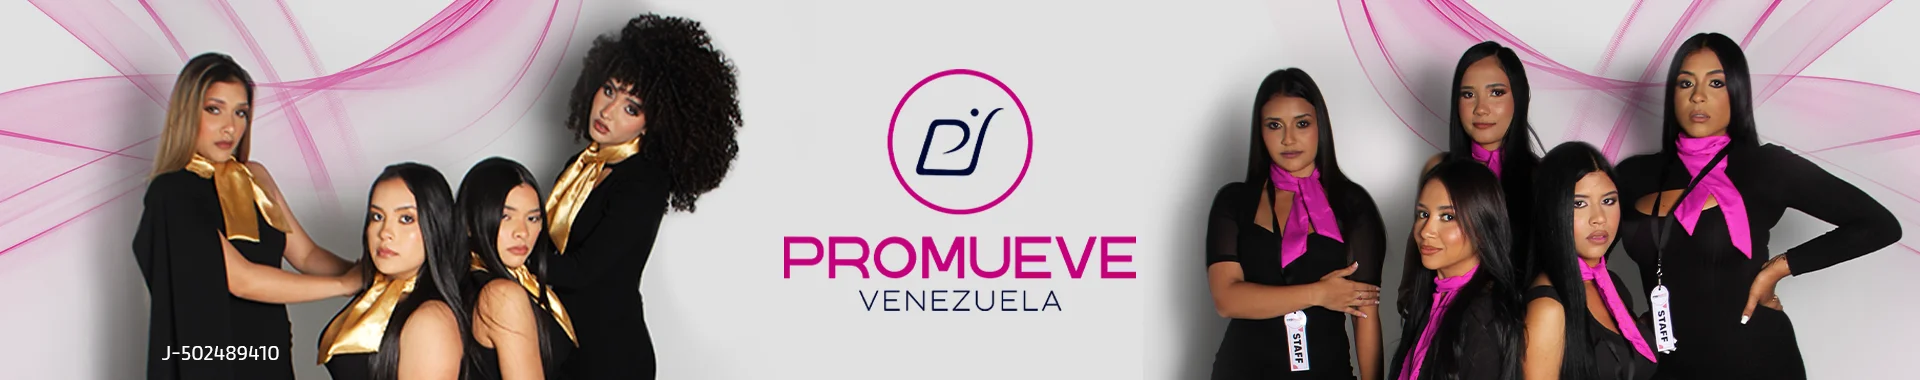 Imagen 1 del perfil de Promueve Venezuela